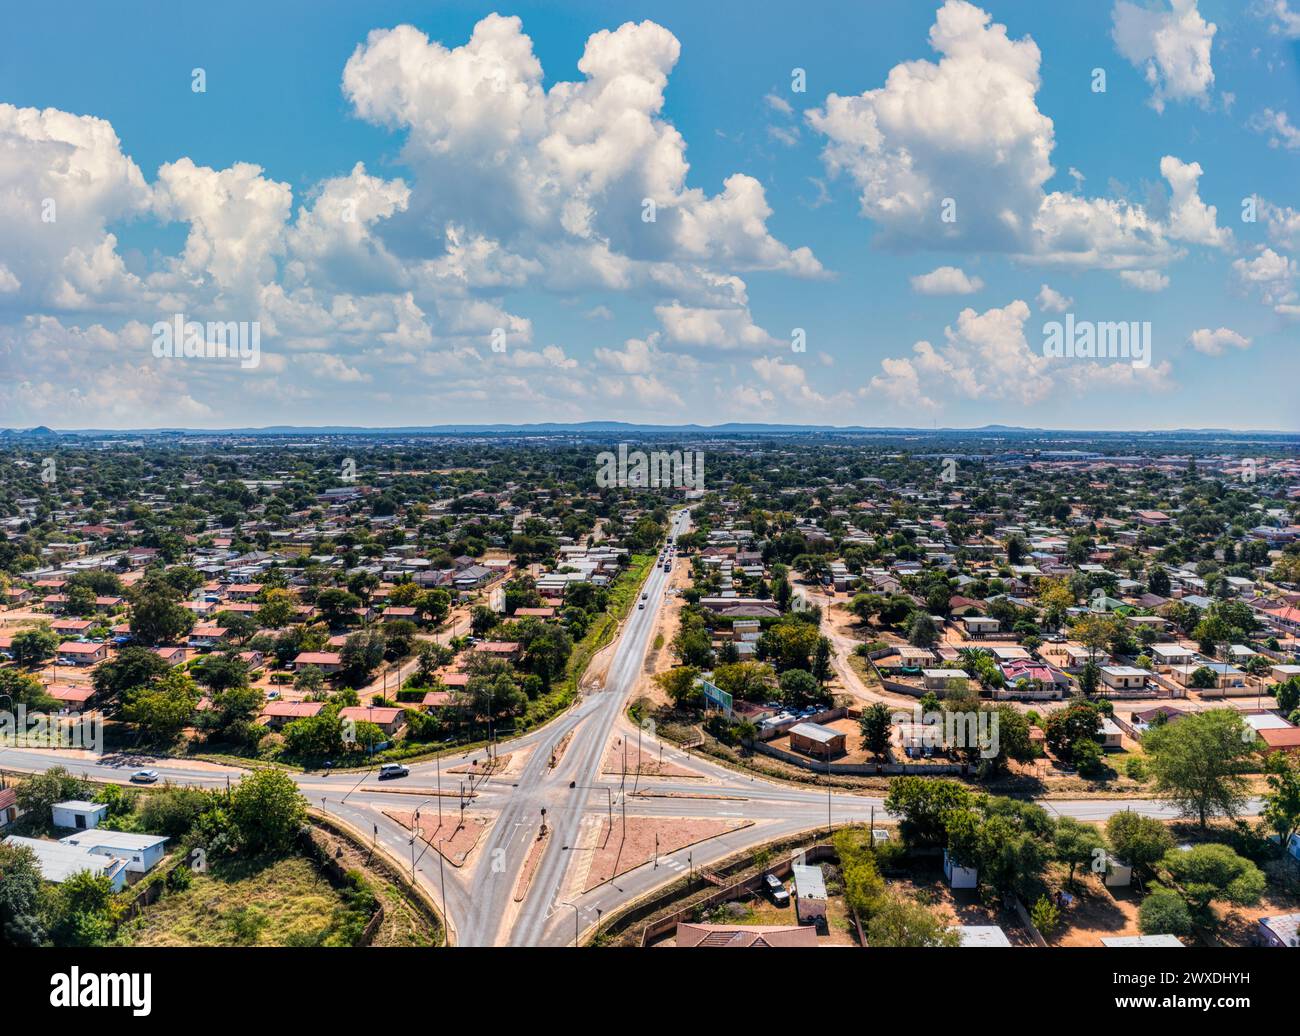 Vista aerea della capitale gaborone, nel quartiere residenziale del Botswana, nel tardo pomeriggio, Foto Stock